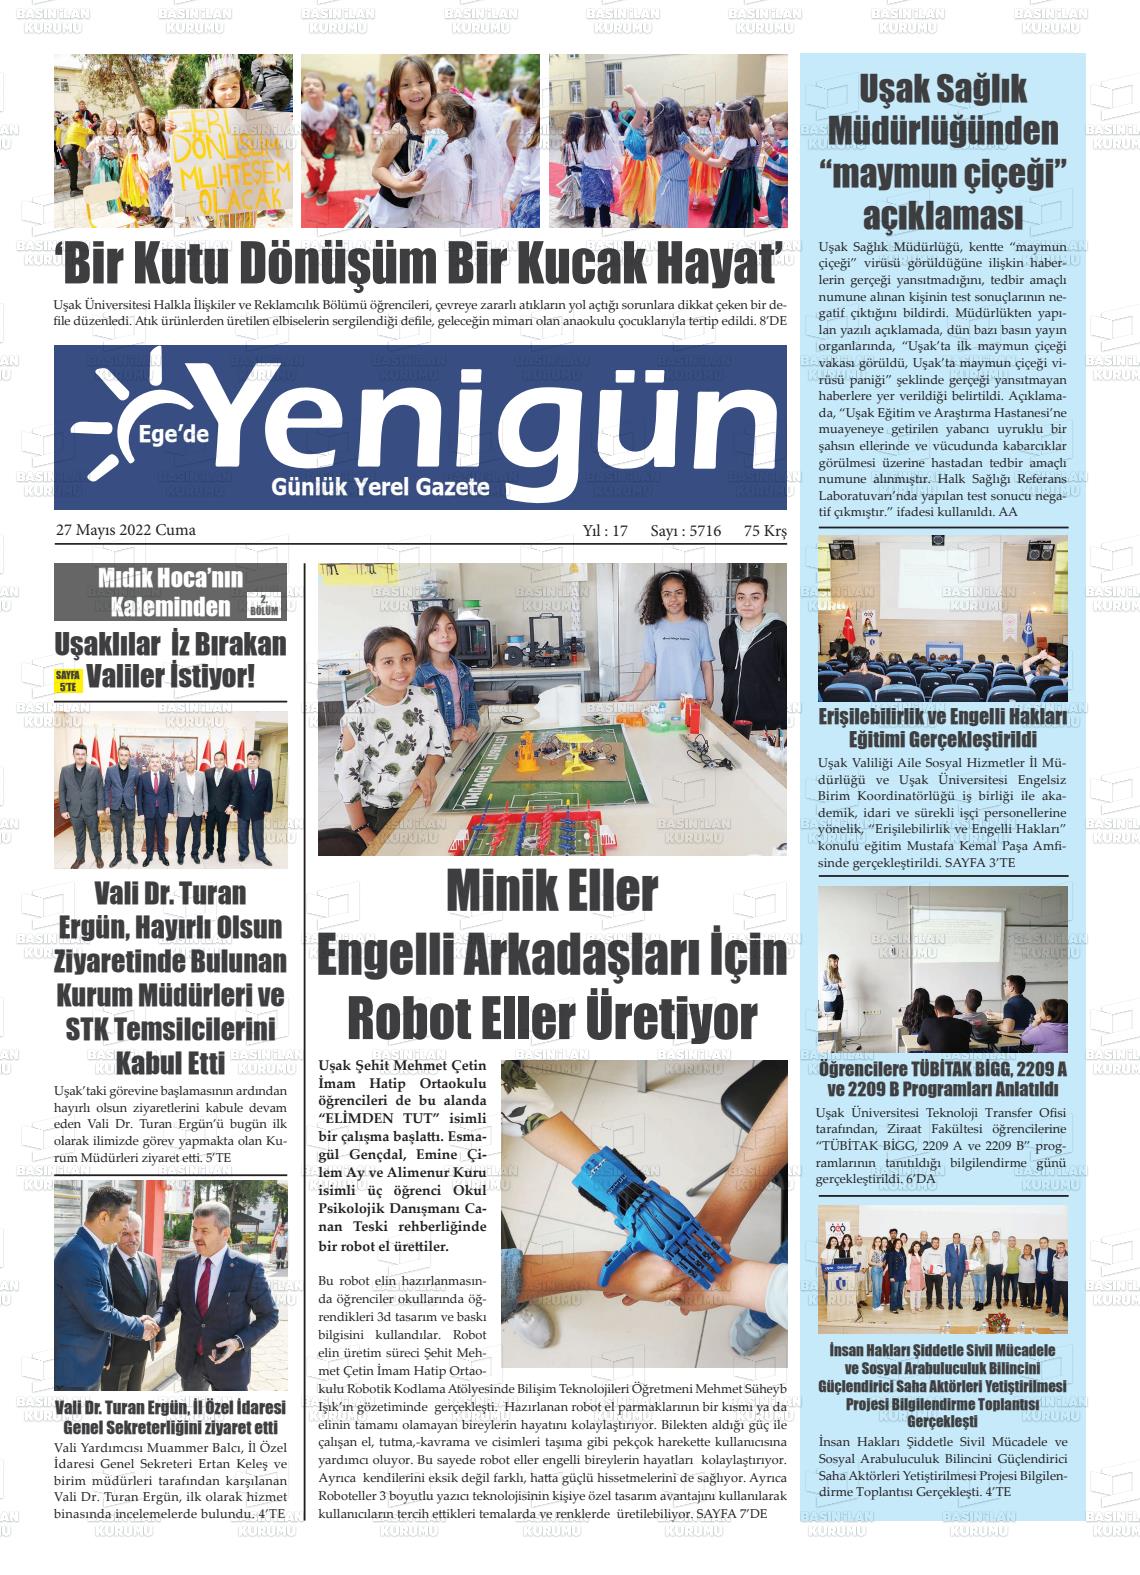 27 Mayıs 2022 EGE'DE YENİGÜN GAZETESİ Gazete Manşeti